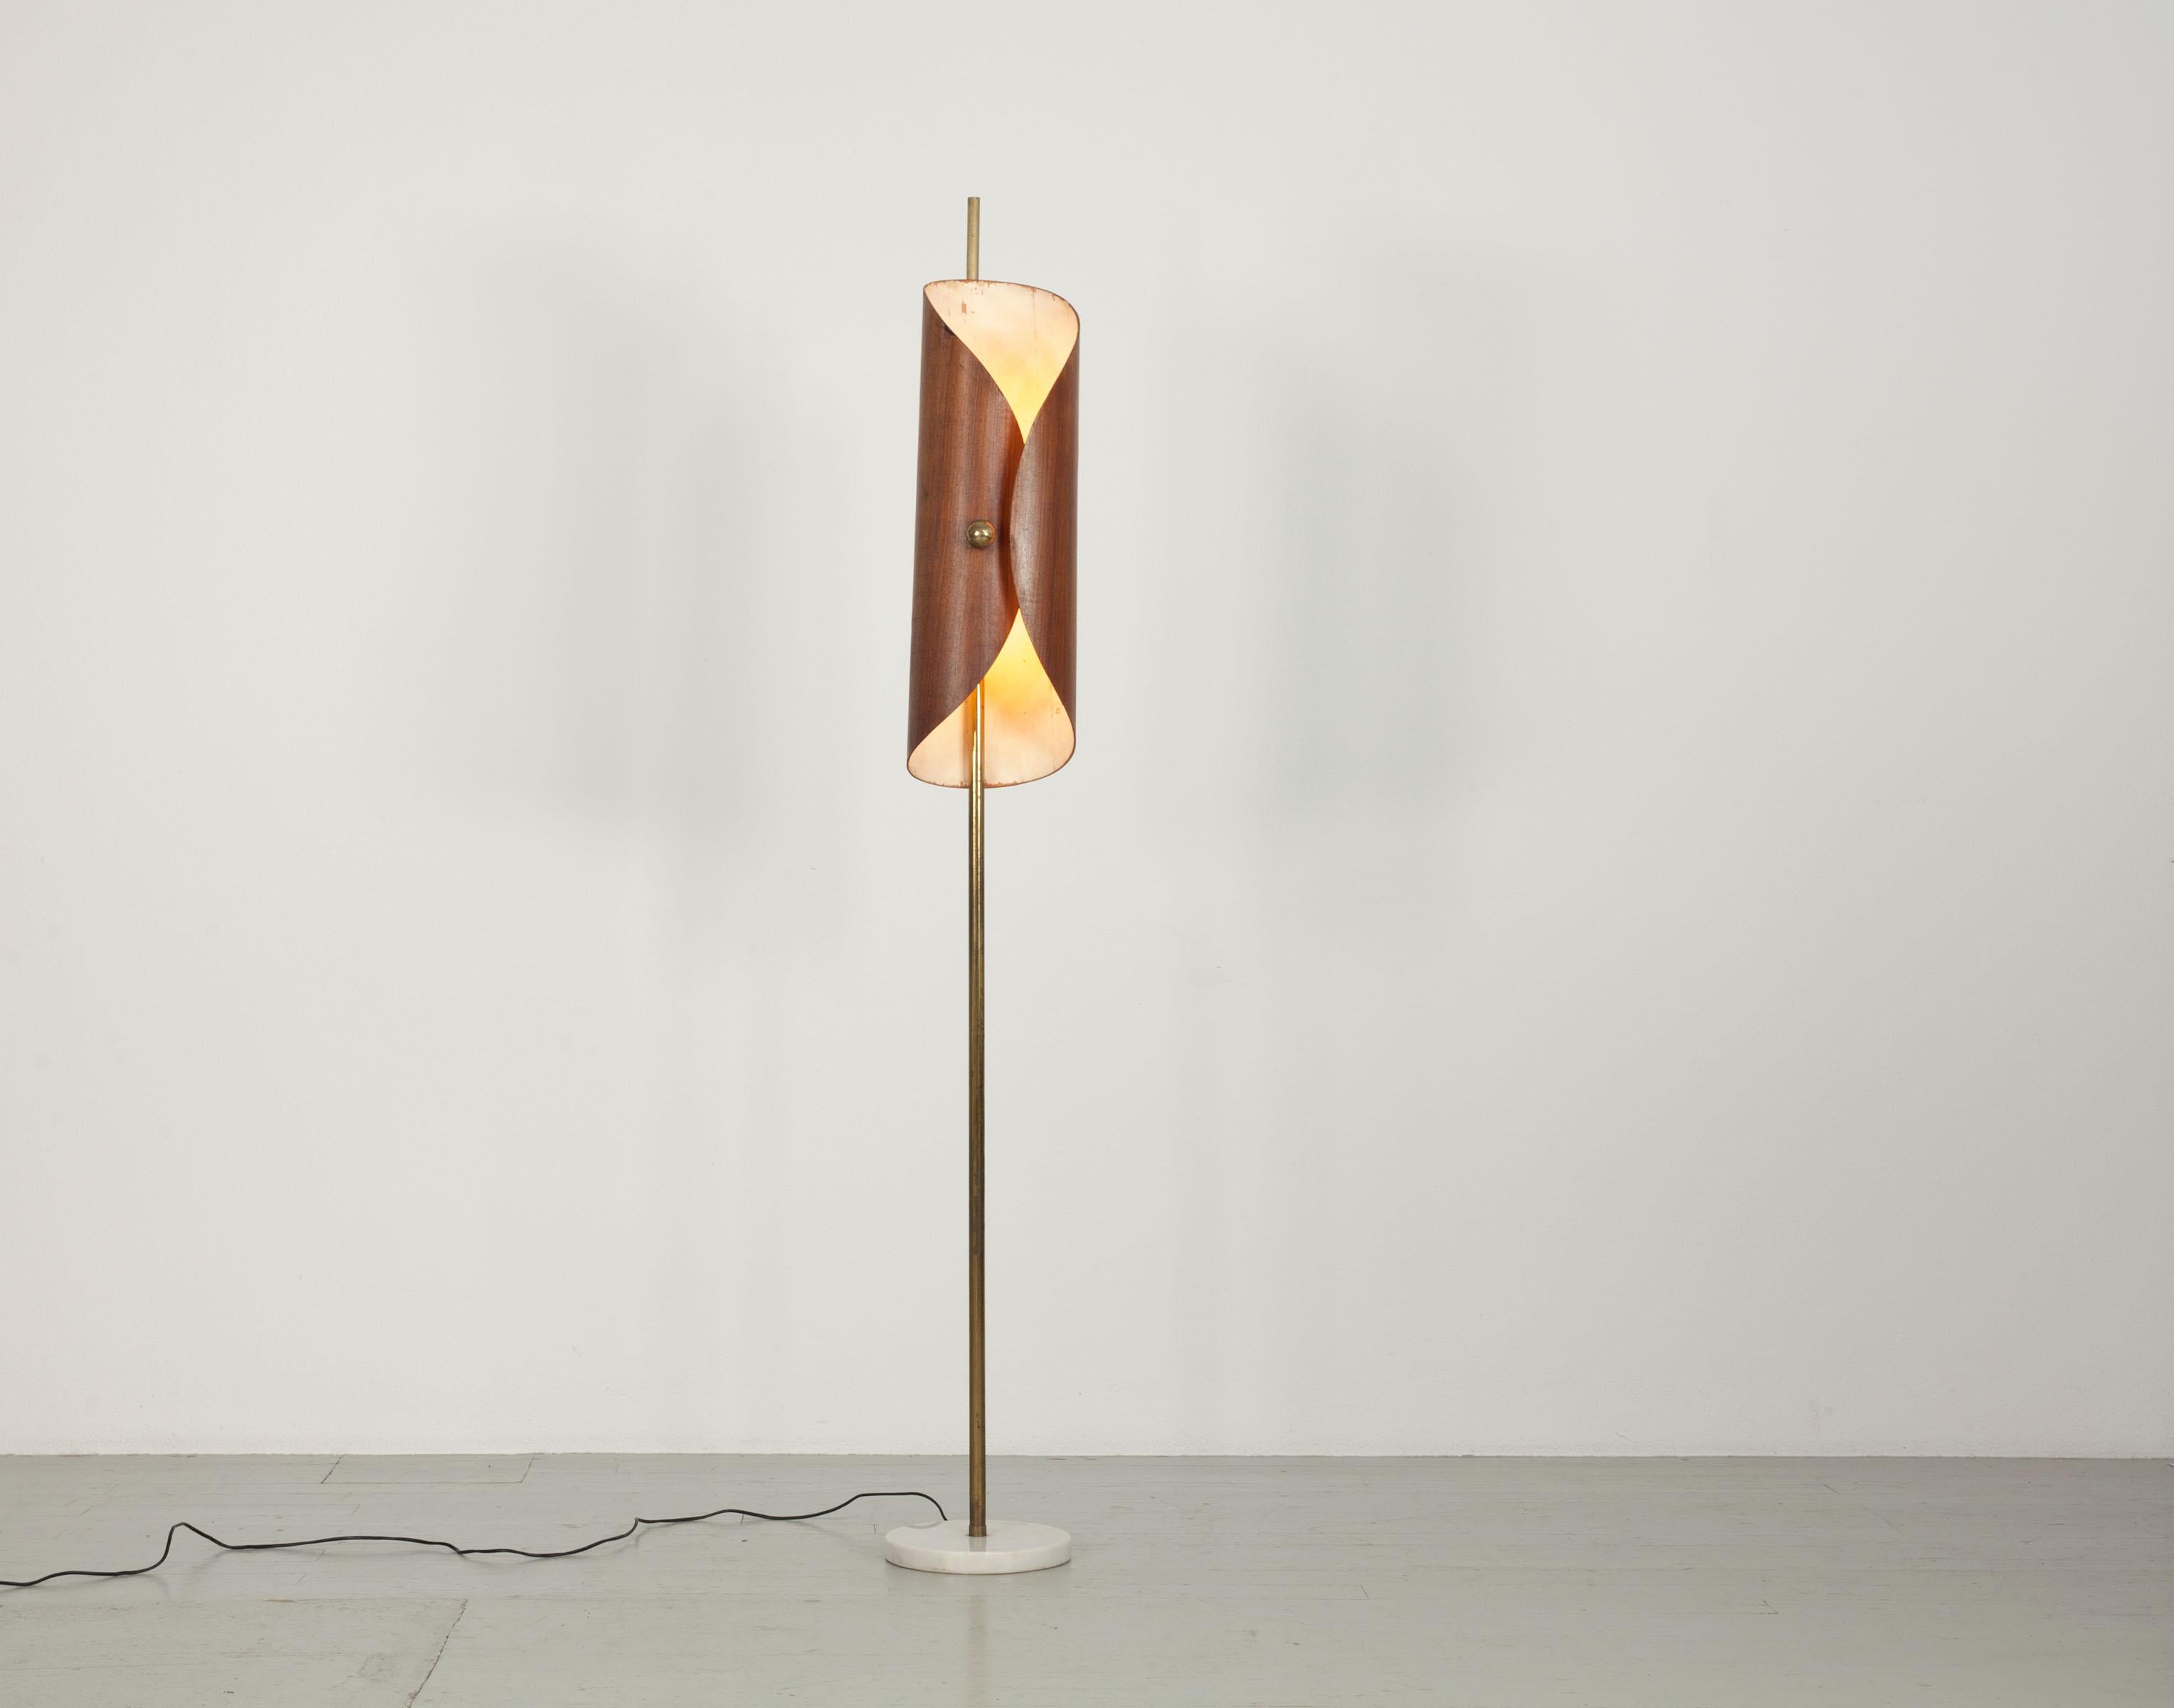 Italienische Stehlampe aus den 60er Jahren. Die Lampe hat einen Lampenschirm aus laminiertem Holz mit Messingelementen und einen Stab aus Messing. Der Sockel der Lampe ist aus Marmor gefertigt. Sie hat eine E27-Fassung. Bis auf die altersbedingte